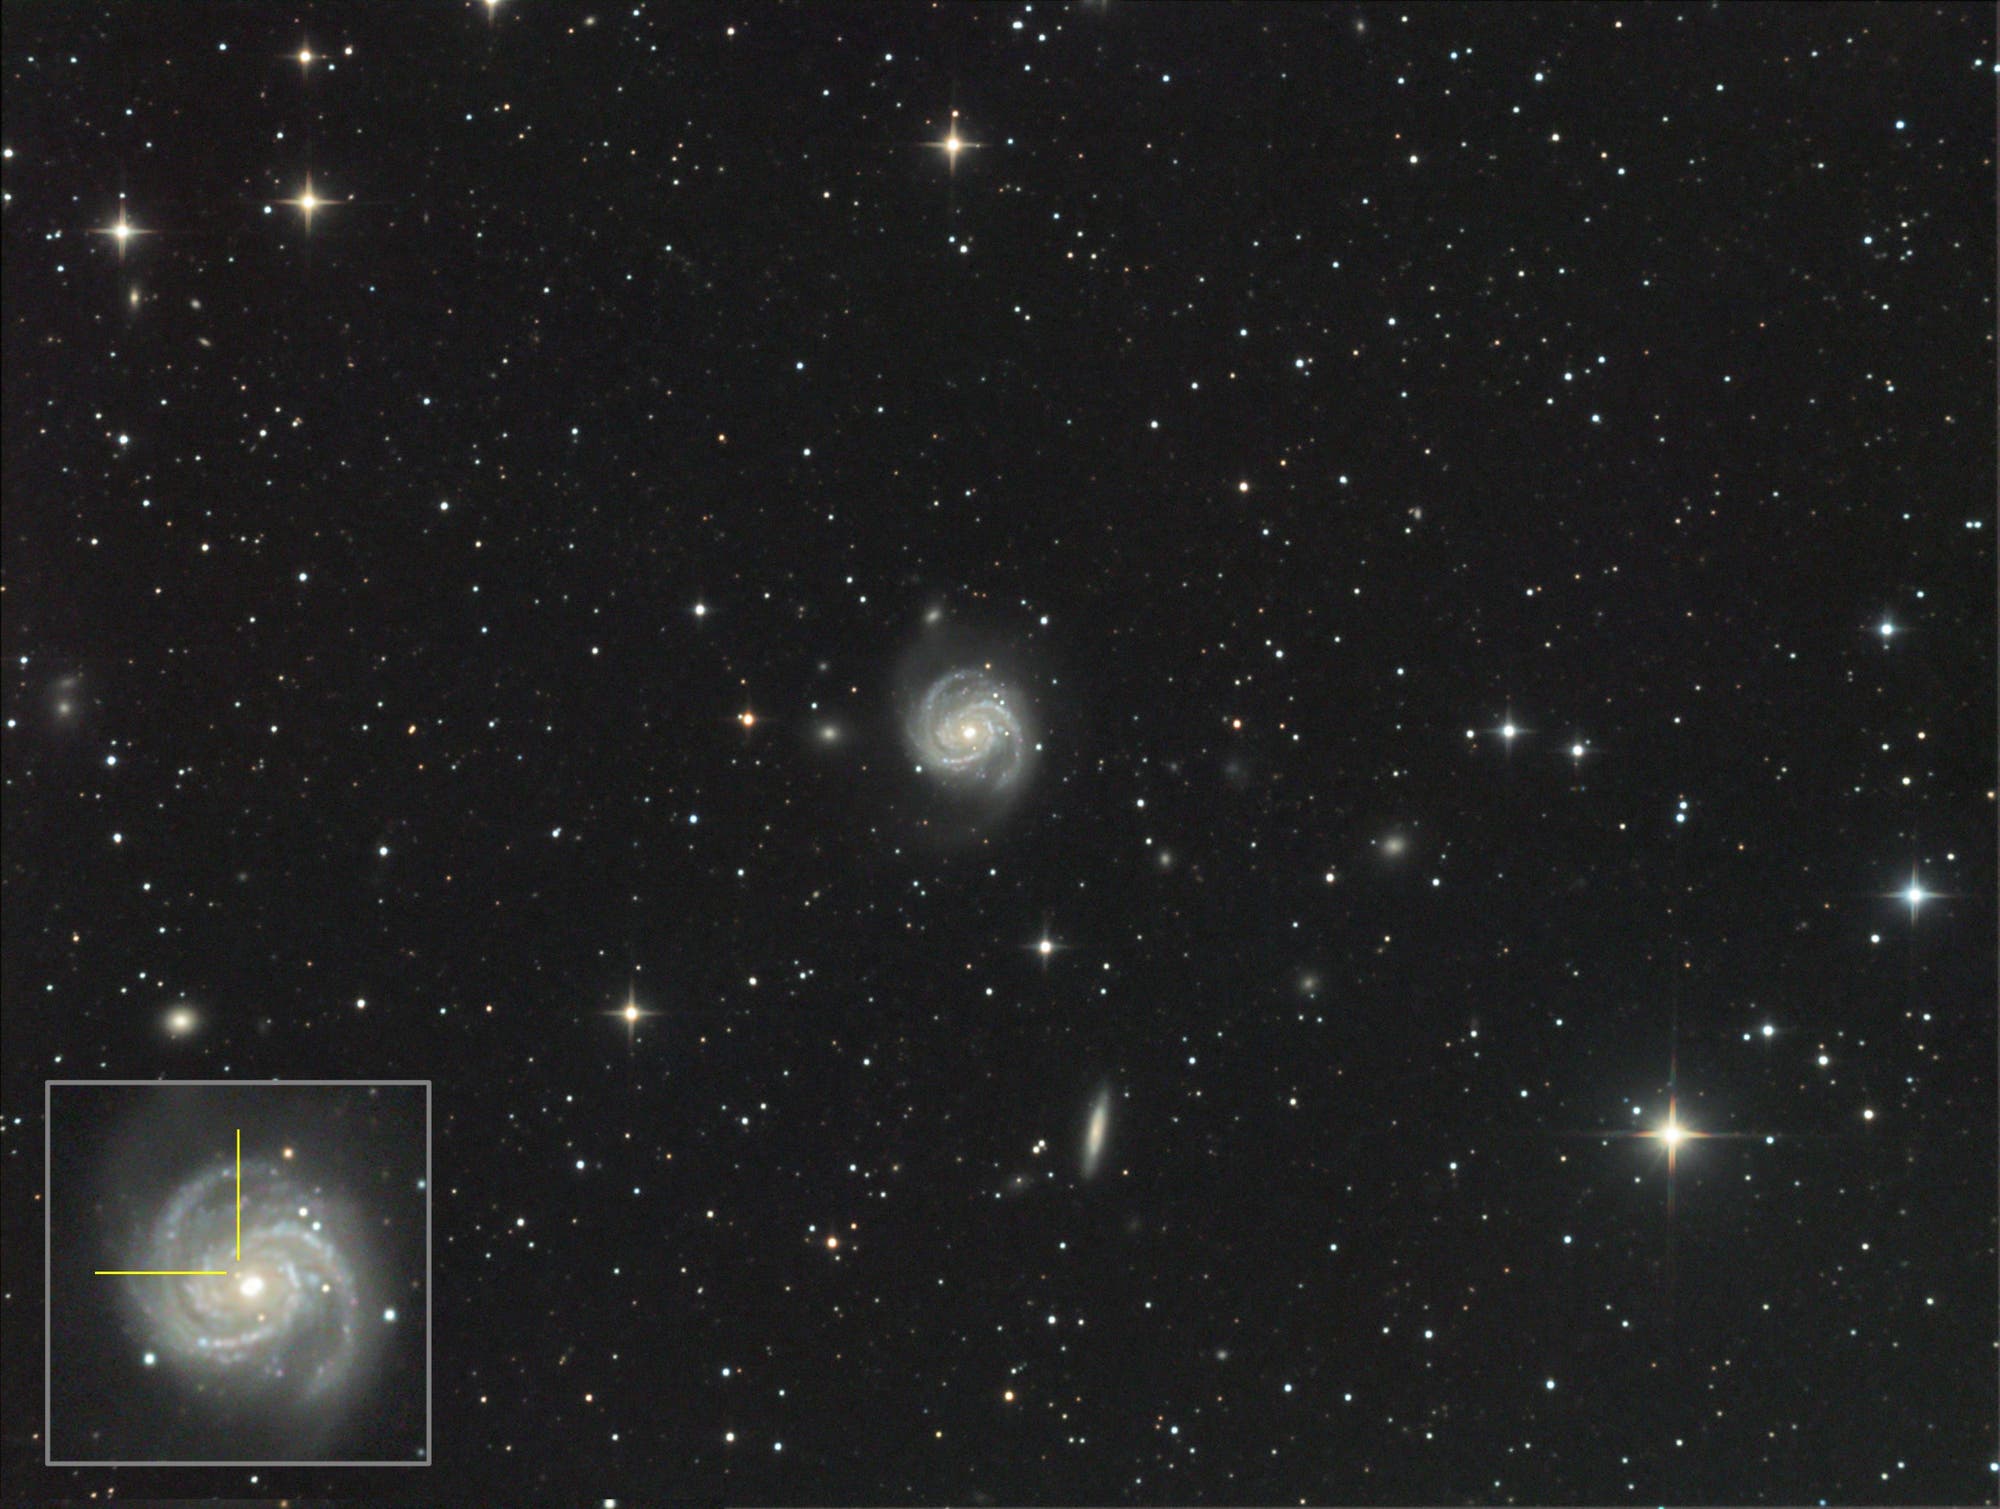 Supernova SN2019ehk in Messier 100